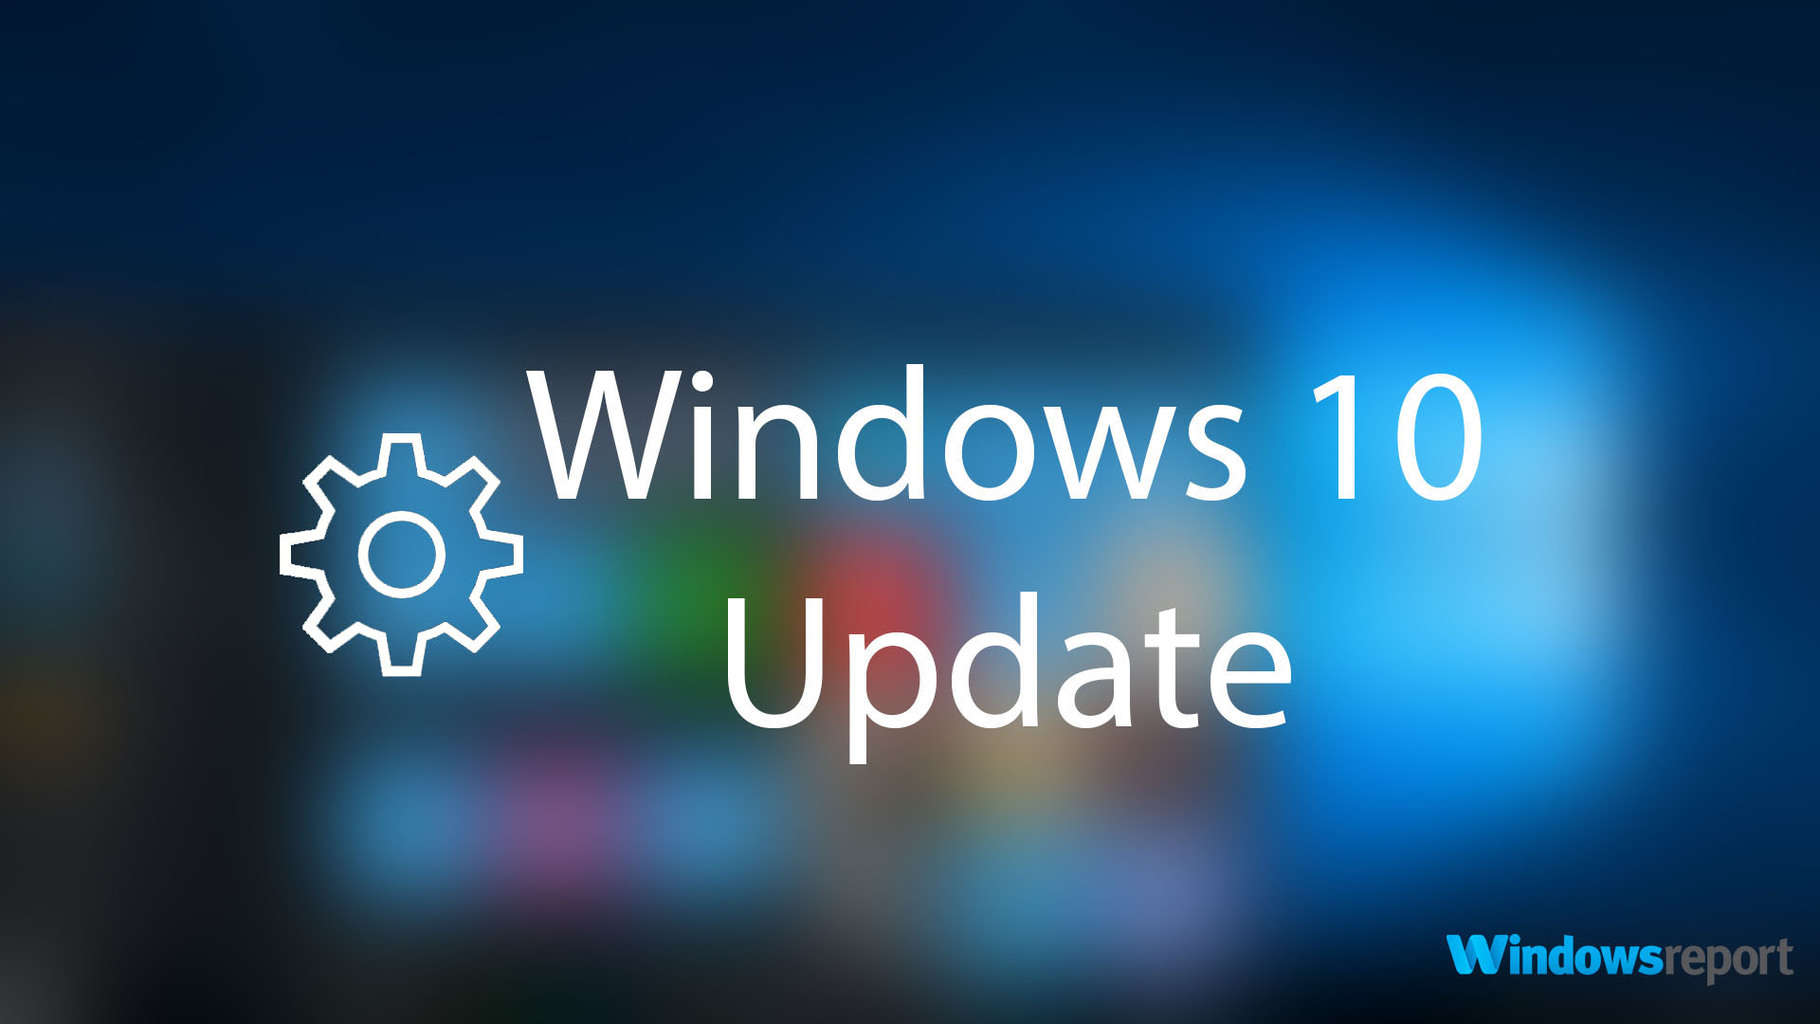 Download Iso Windows 10 1809 Và 1803 Mới Cập Nhật Vào Tháng 1 Năm 2019 -  Asus Community | Zentalk.Vn